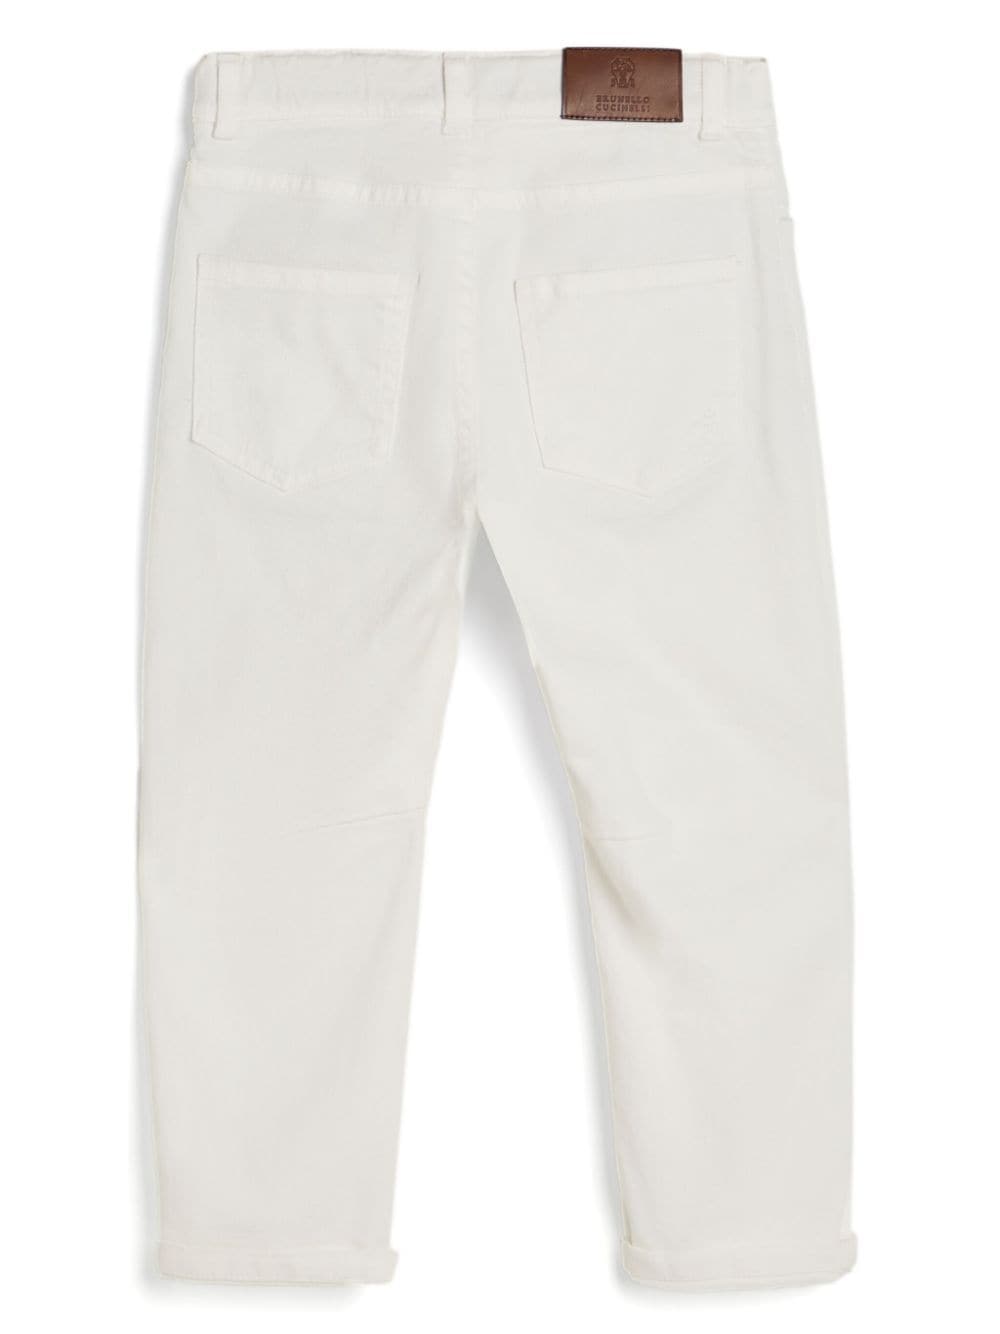 Pantalone bianco bambino